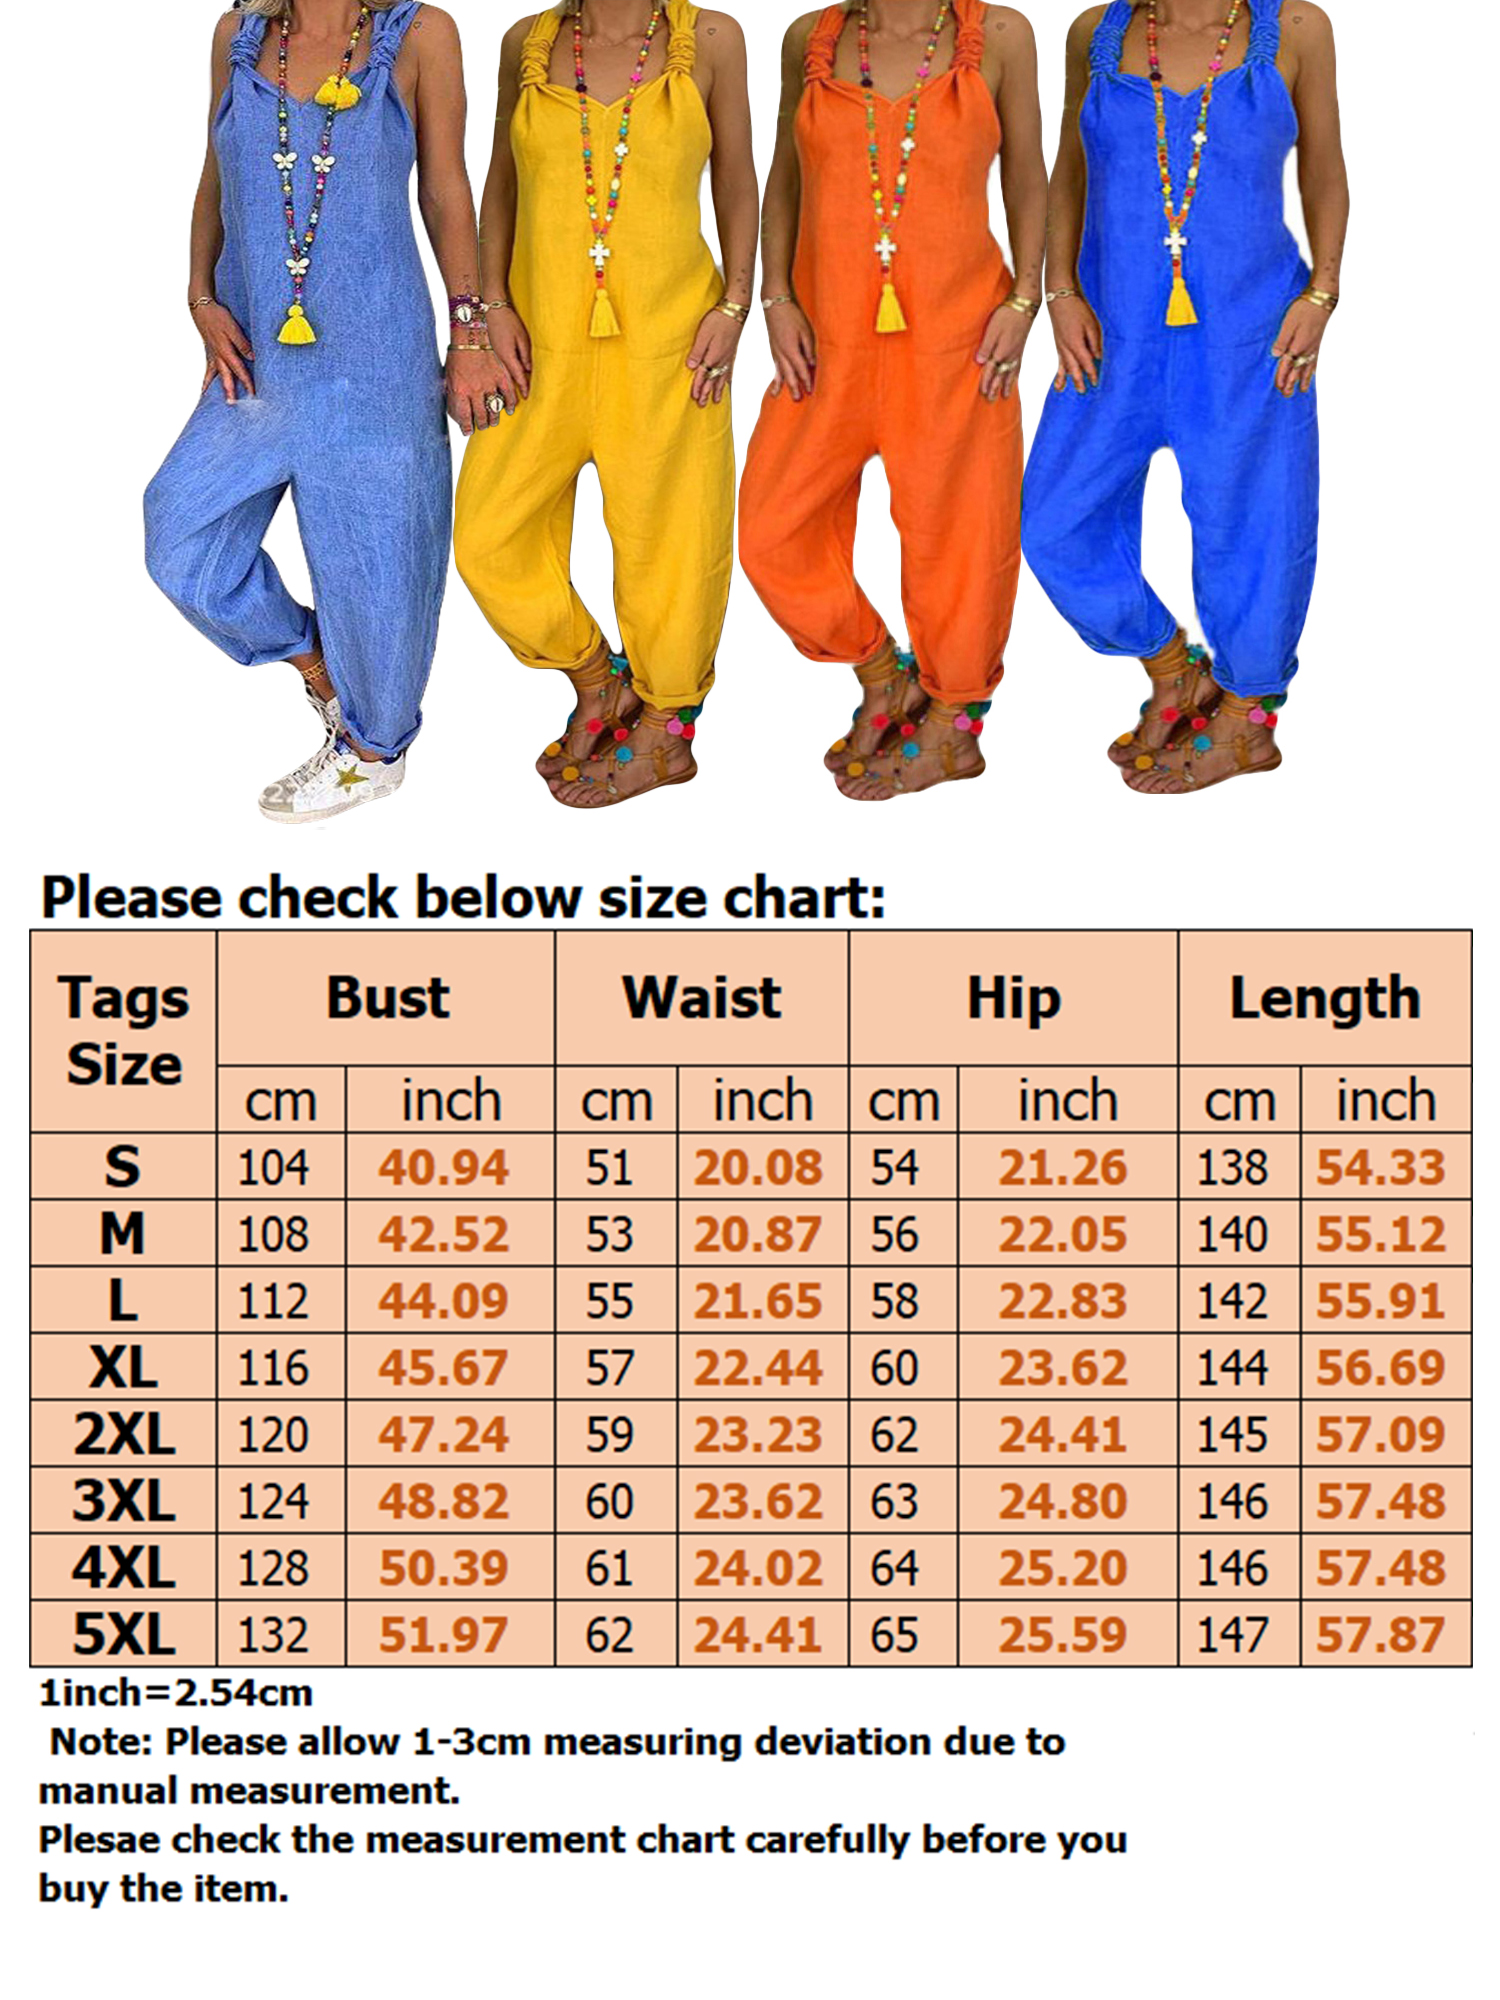 Women's Jumpsuits Casual Long Rompers Wide Leg Baggy Bibs Overalls Harem Pants Plus Cotton Linen Jumpsuits Ladies Summer Bandage Jumpsuit S-5XL - image 2 of 2